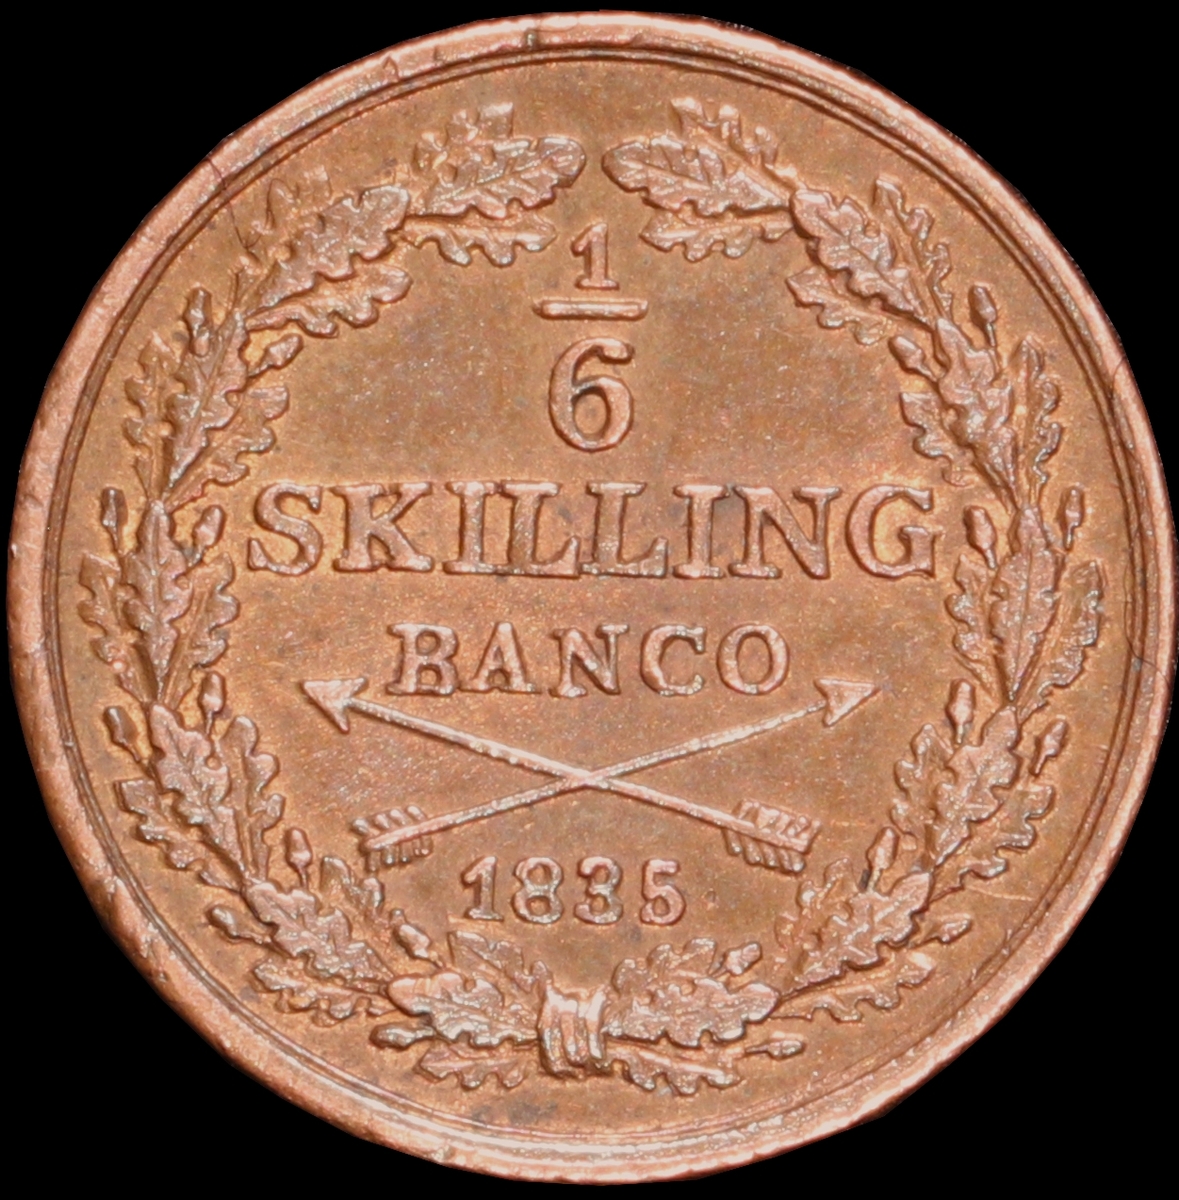 Mynt med valören 1/6 skilling banco. Åtsidan har Kung Karl XIV Johans monogram, tre kronor kungens valspråk. Frånsidan visar valören, två korslagda pilar samt en växtkrans.